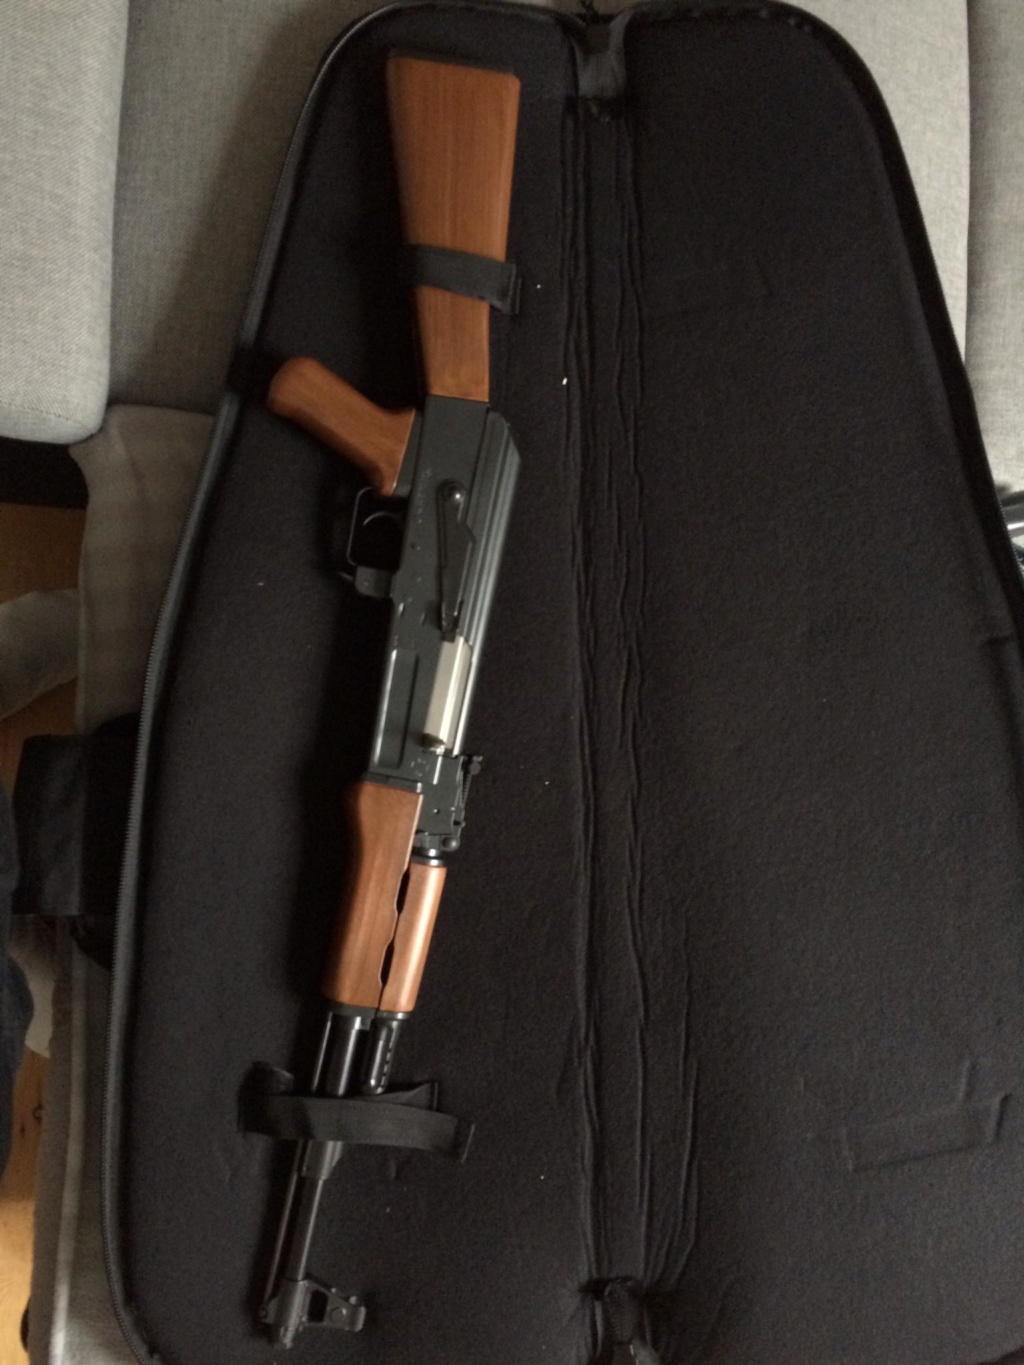 VENTE AK-47 TOKYO MARUI 88175312